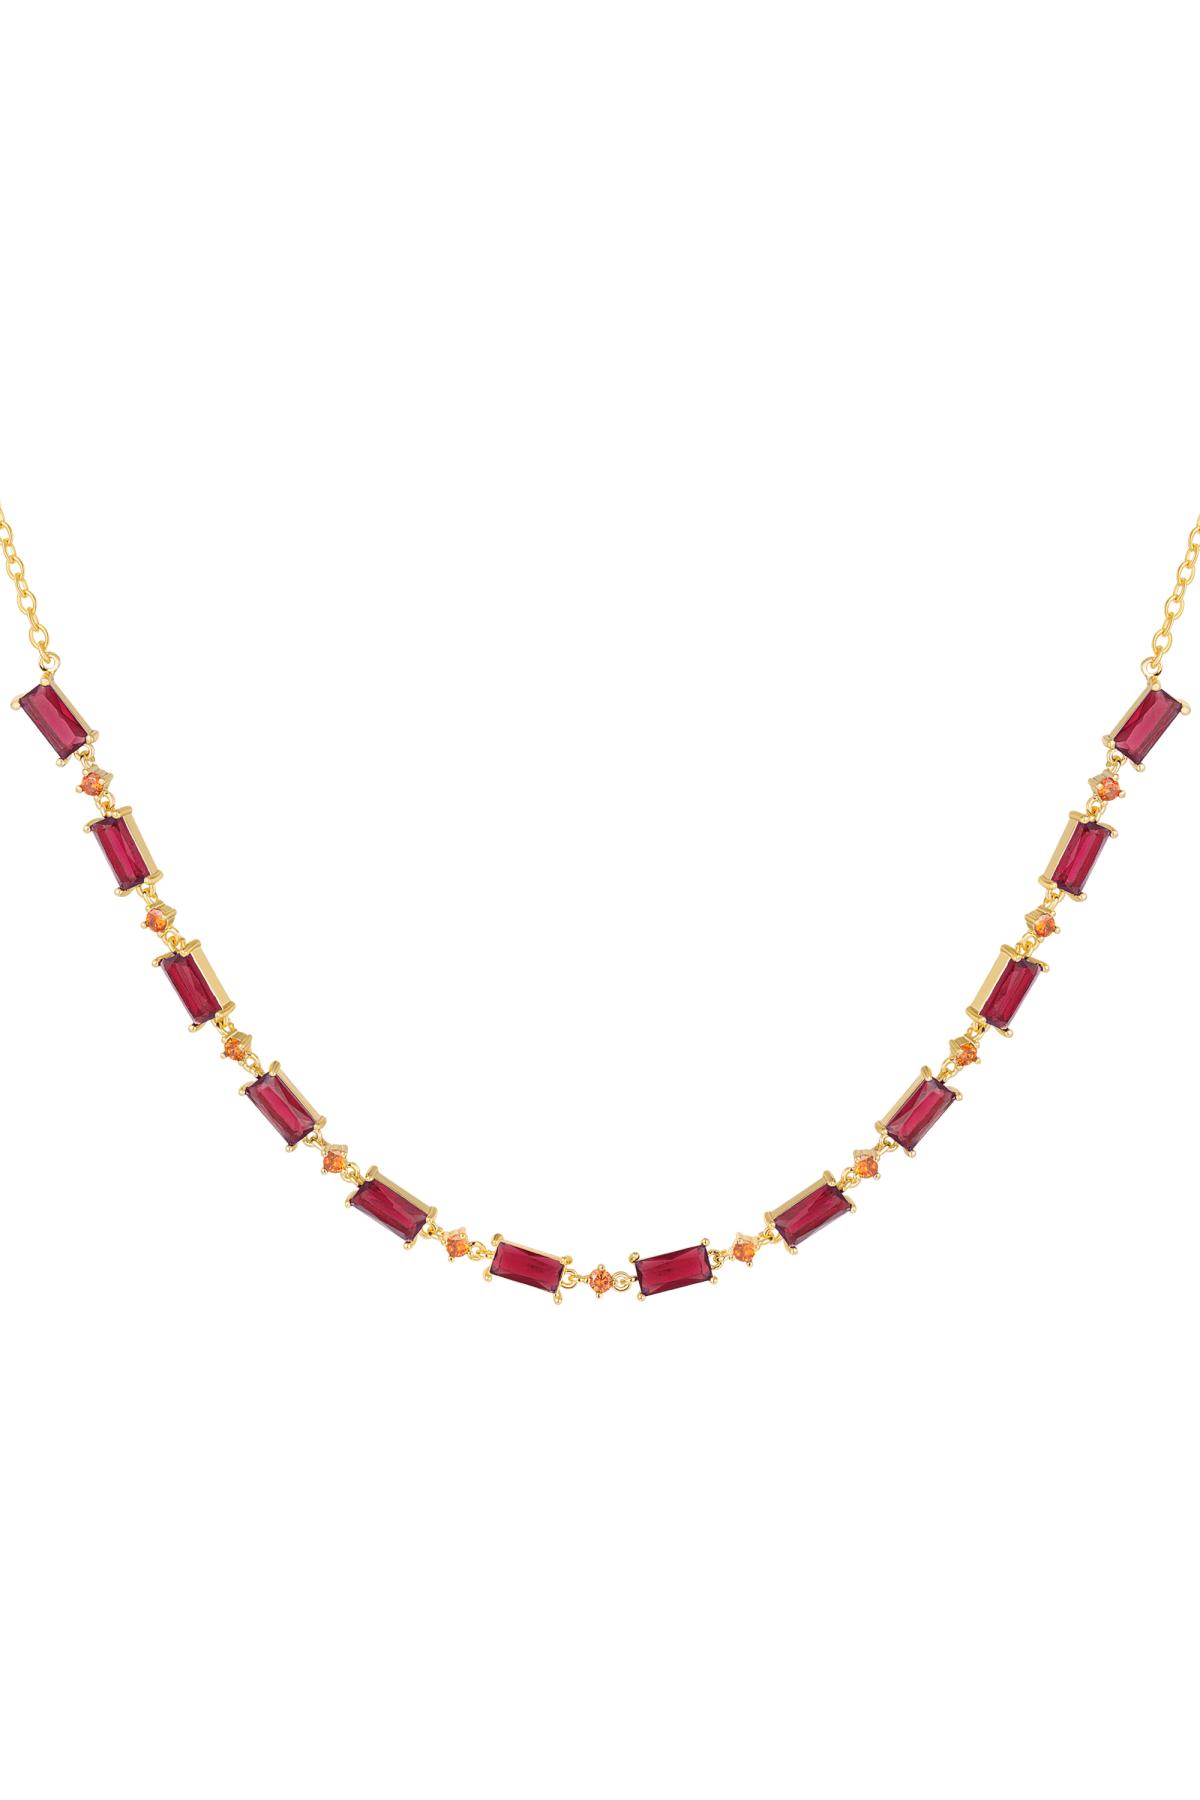 Halskette mit farbigen Steinen - Kollektion Sparkle Fuchsia Kupfer